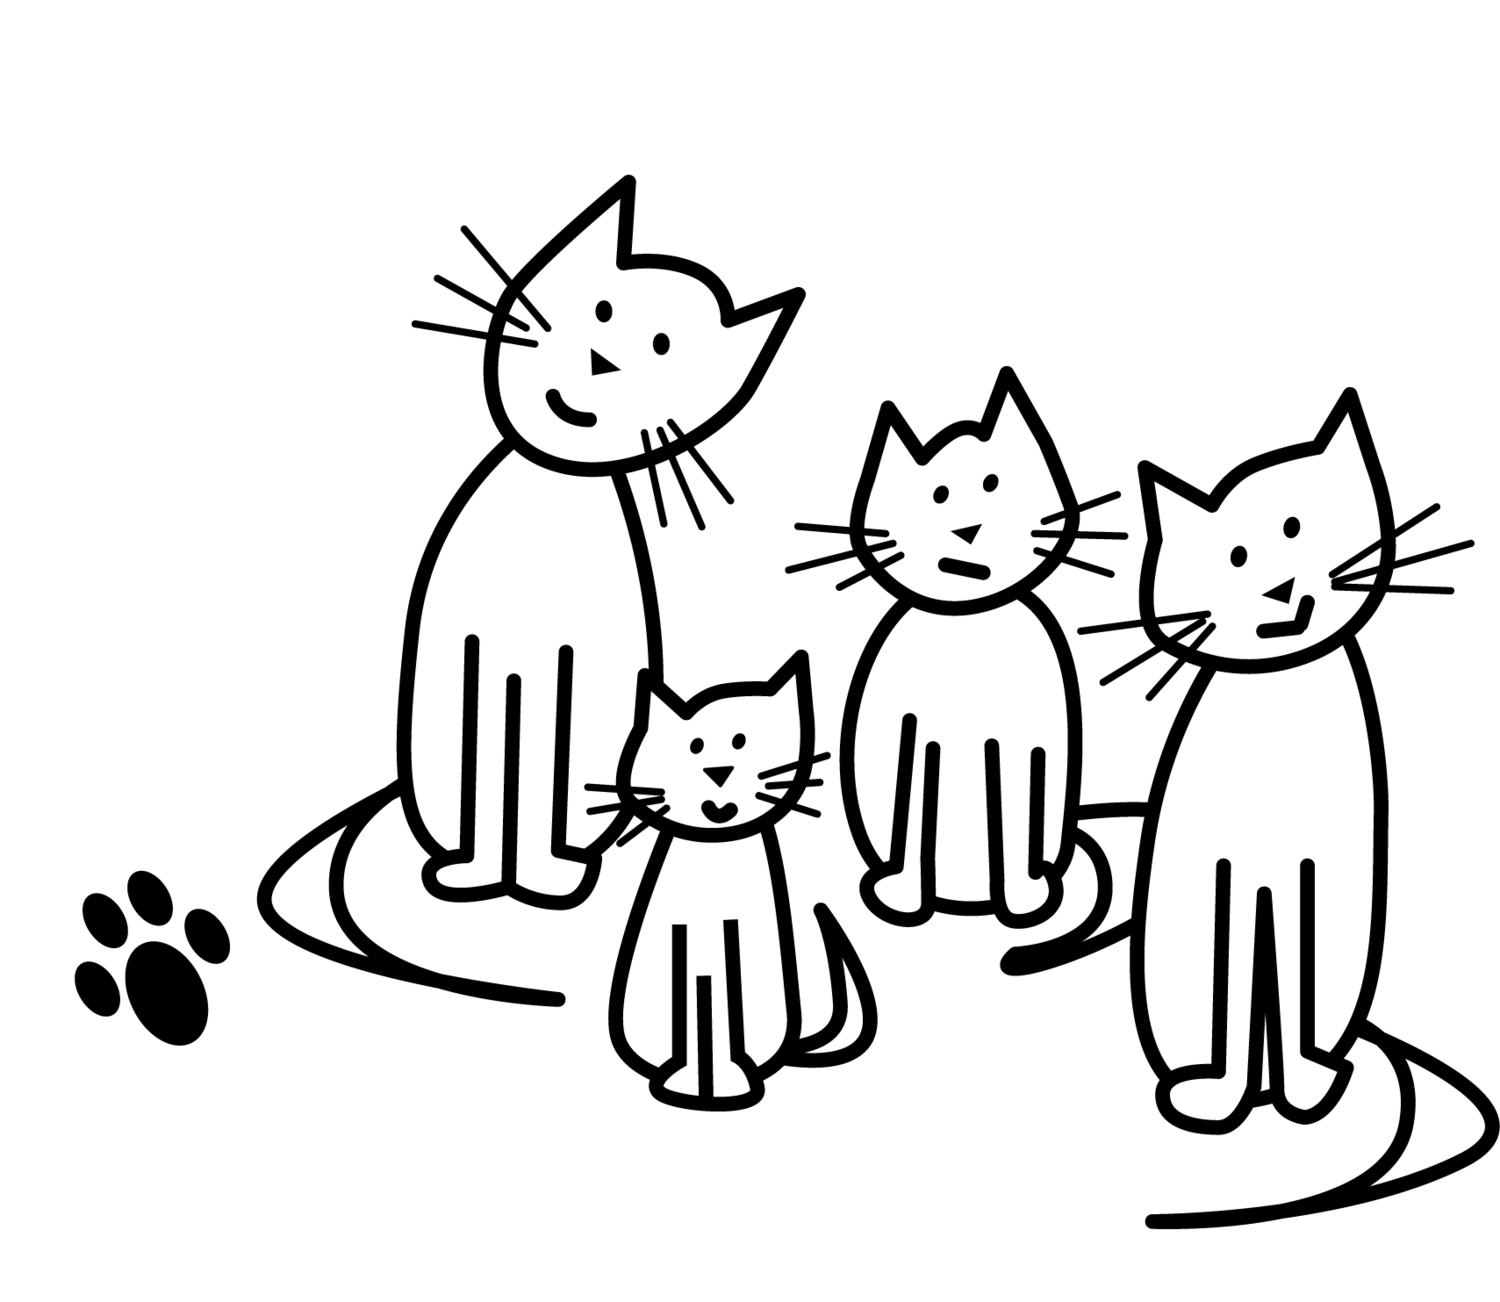 Wahi Cats (washington Heights Cat Colony)